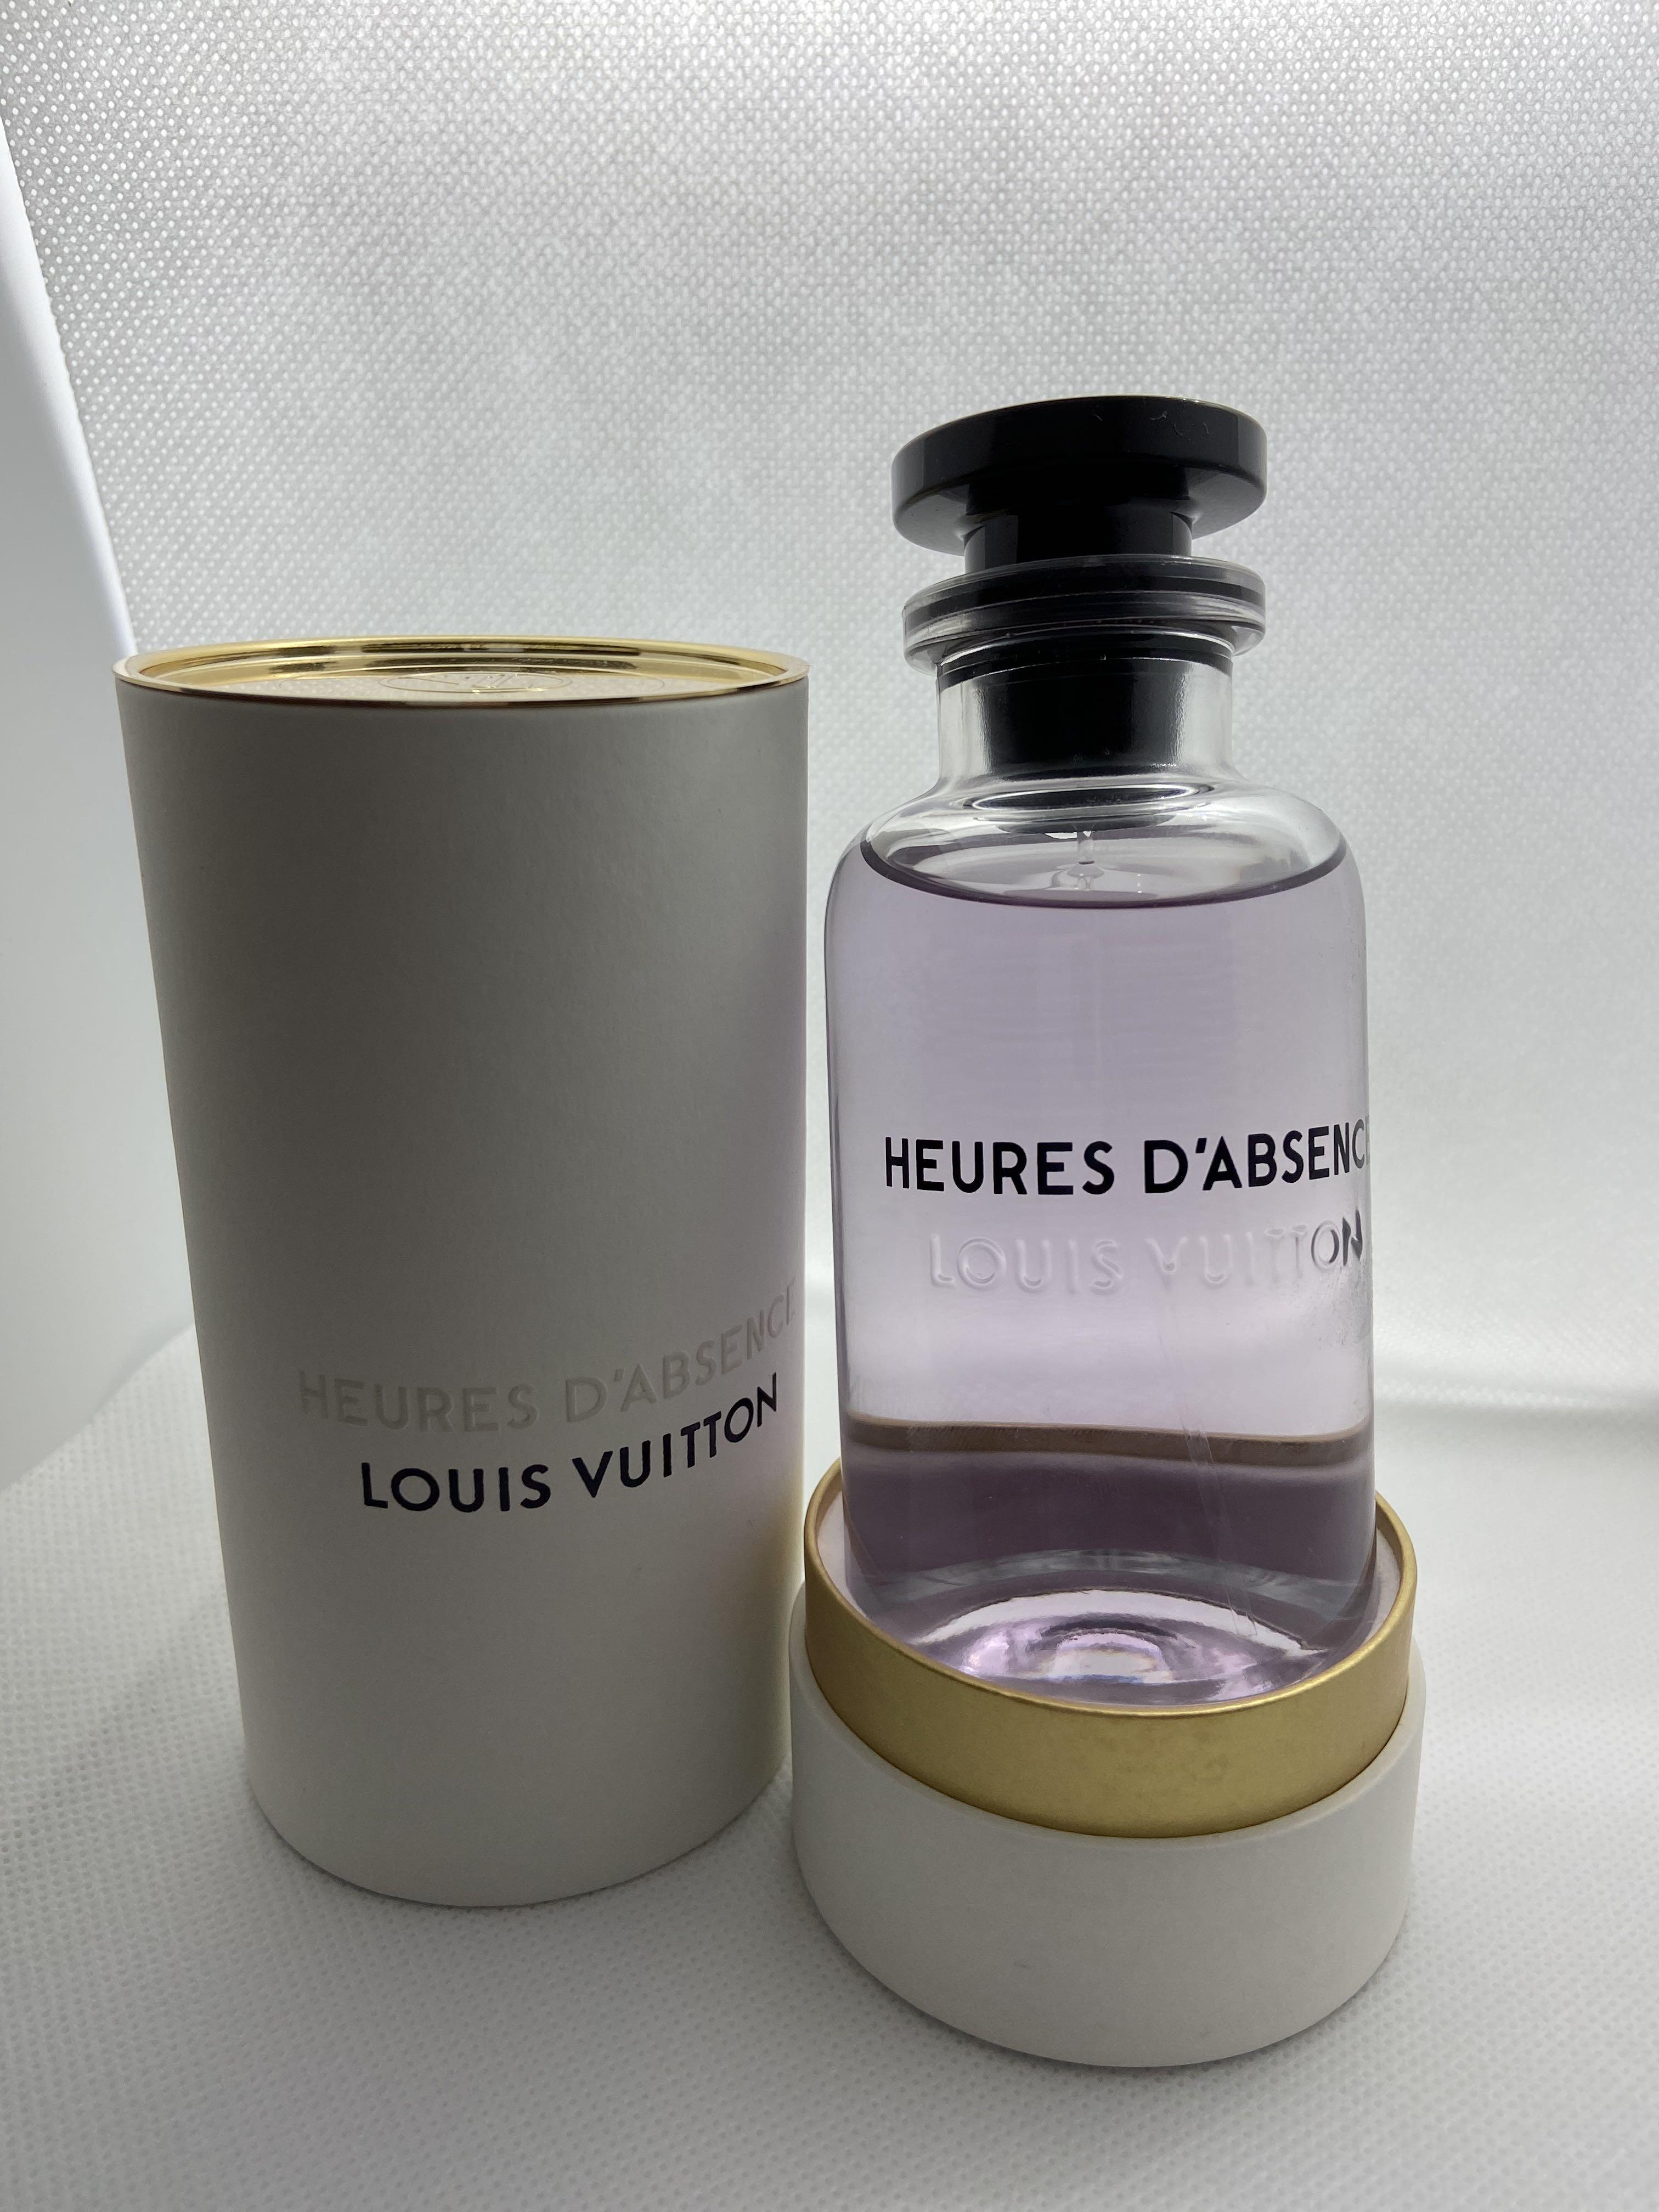 Louis Vuitton Heures DAbsence  luxury perfume  Mifashop